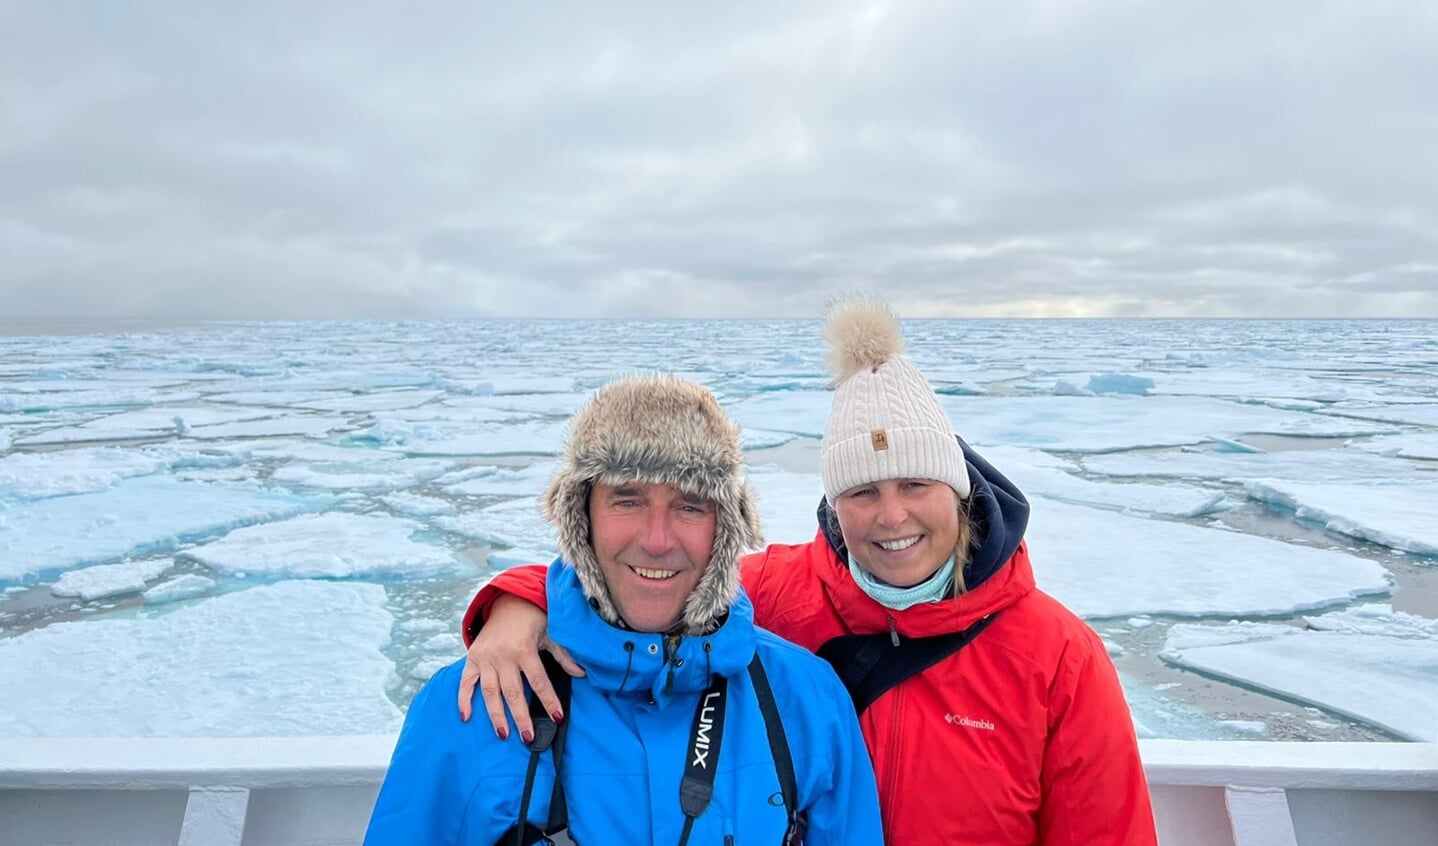 'Voor ons, Ellen van den Ham en Rene Verschoor, was het dit jaar een totaal andere zomervakantie. Zomer in Spitsbergen tussen de ijsschotsen, zeehonden, walvissen, walrussen, orka's en ijsberen. Wat een avontuur.'